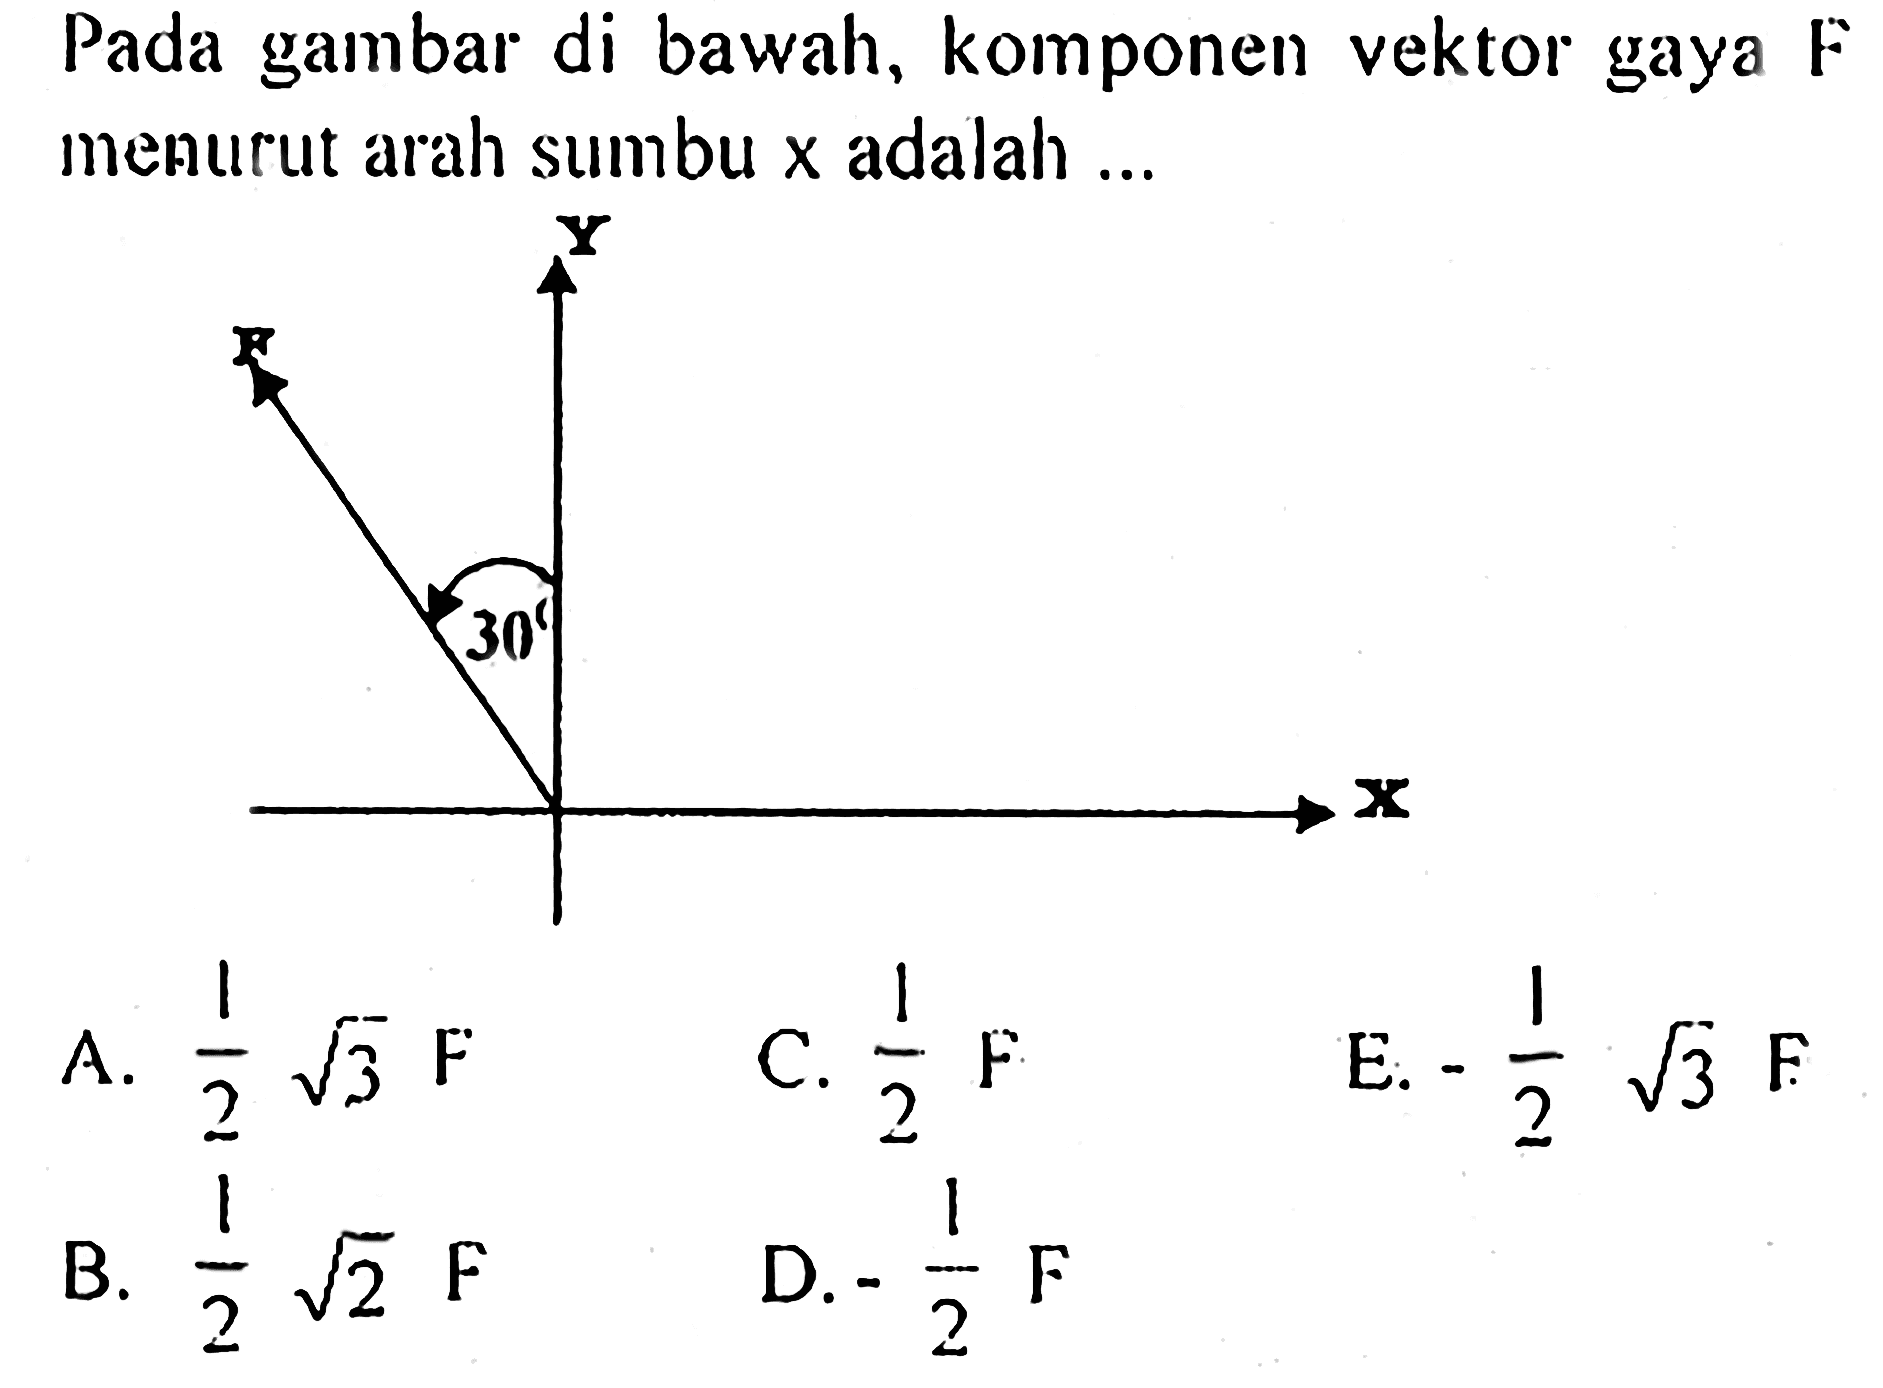 Pada gambar di bawah, komponen vektor gaya F menurut arah sumbu x adalah ... 30 X Y F A.  1/2 akar(3) F C.  1/2 F E.  -1/2 akar(3) F B.  1/2 akar(2) F D.  -1/2 F 